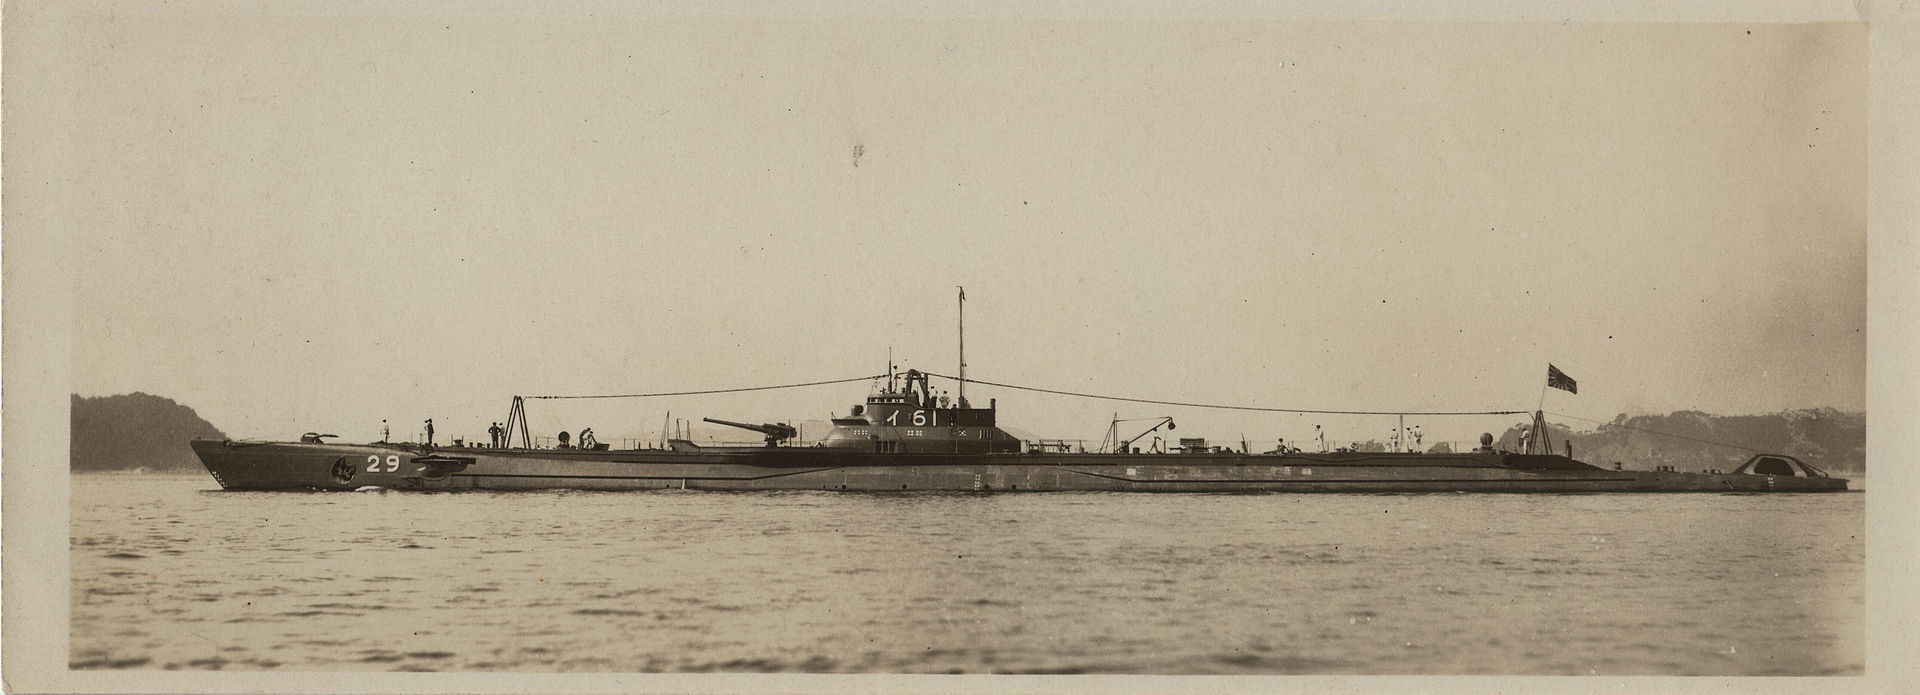 Japanese Submarine I-61.jpg